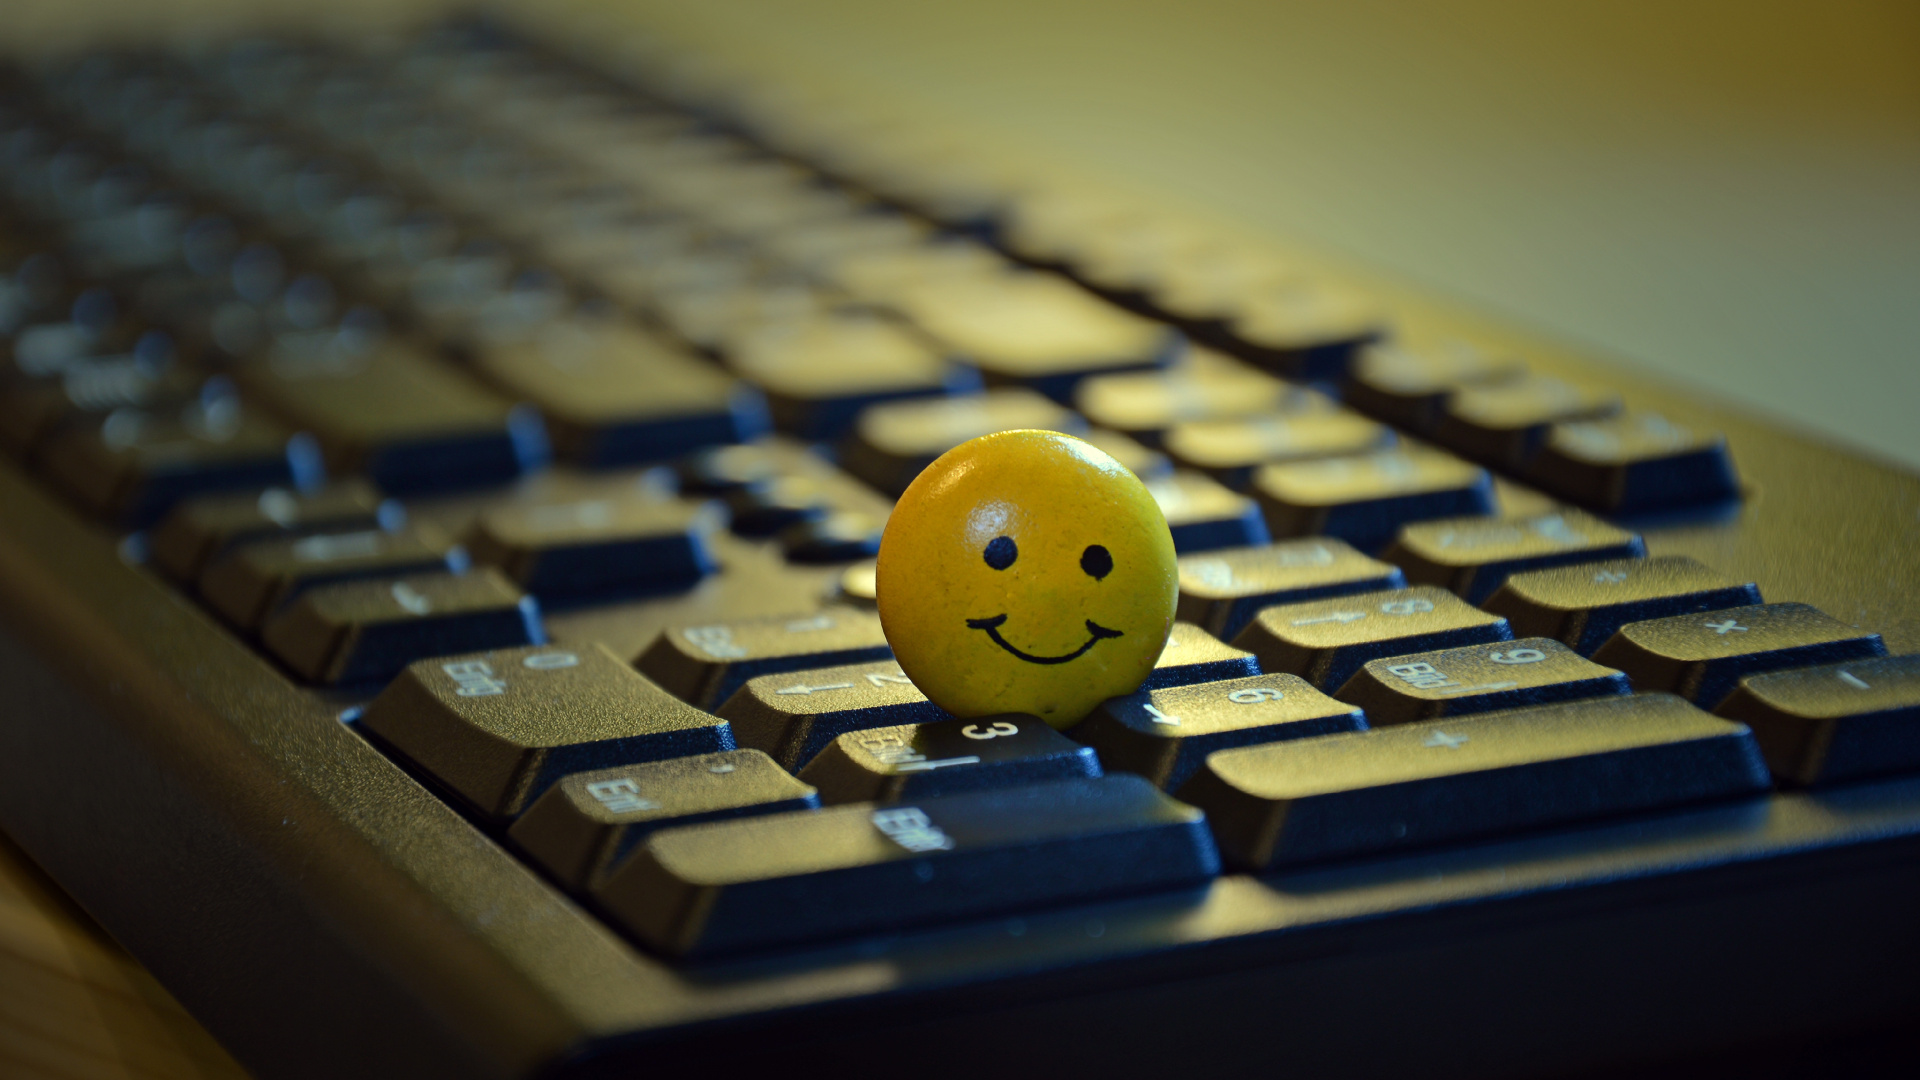 Gelber Smiley-Ball Auf Schwarzer Computertastatur. Wallpaper in 1920x1080 Resolution